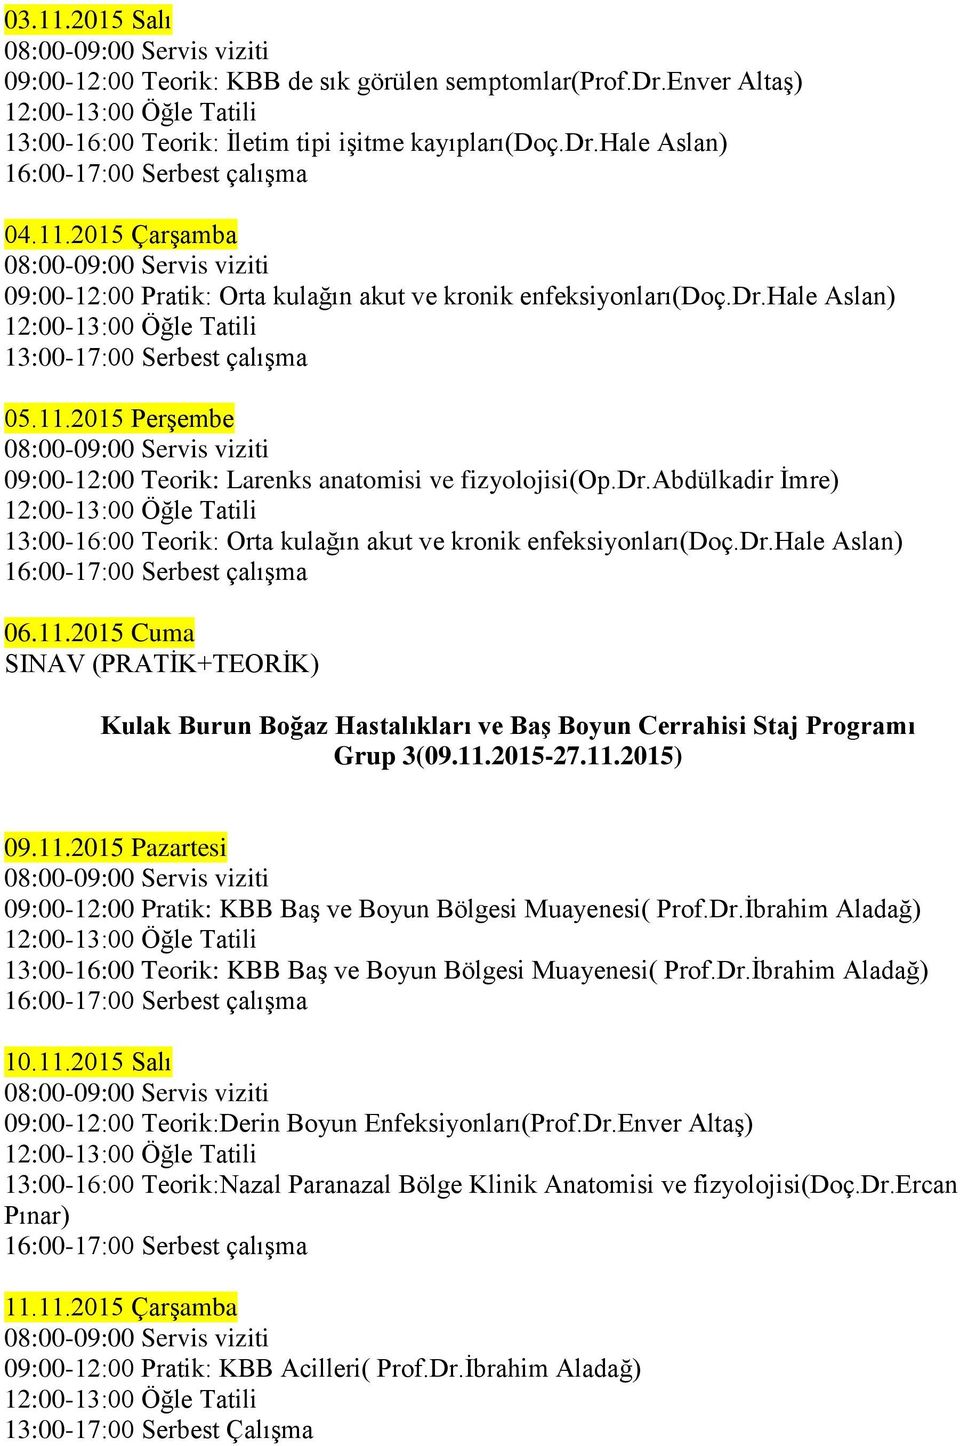 dr.hale Aslan) 06.11.2015 Cuma SINAV (PRATİK+TEORİK) Kulak Burun Boğaz Hastalıkları ve Baş Boyun Cerrahisi Staj Programı Grup 3(09.11.2015-27.11.2015) 09.11.2015 Pazartesi 09:00-12:00 Pratik: KBB Baş ve Boyun Bölgesi Muayenesi( Prof.